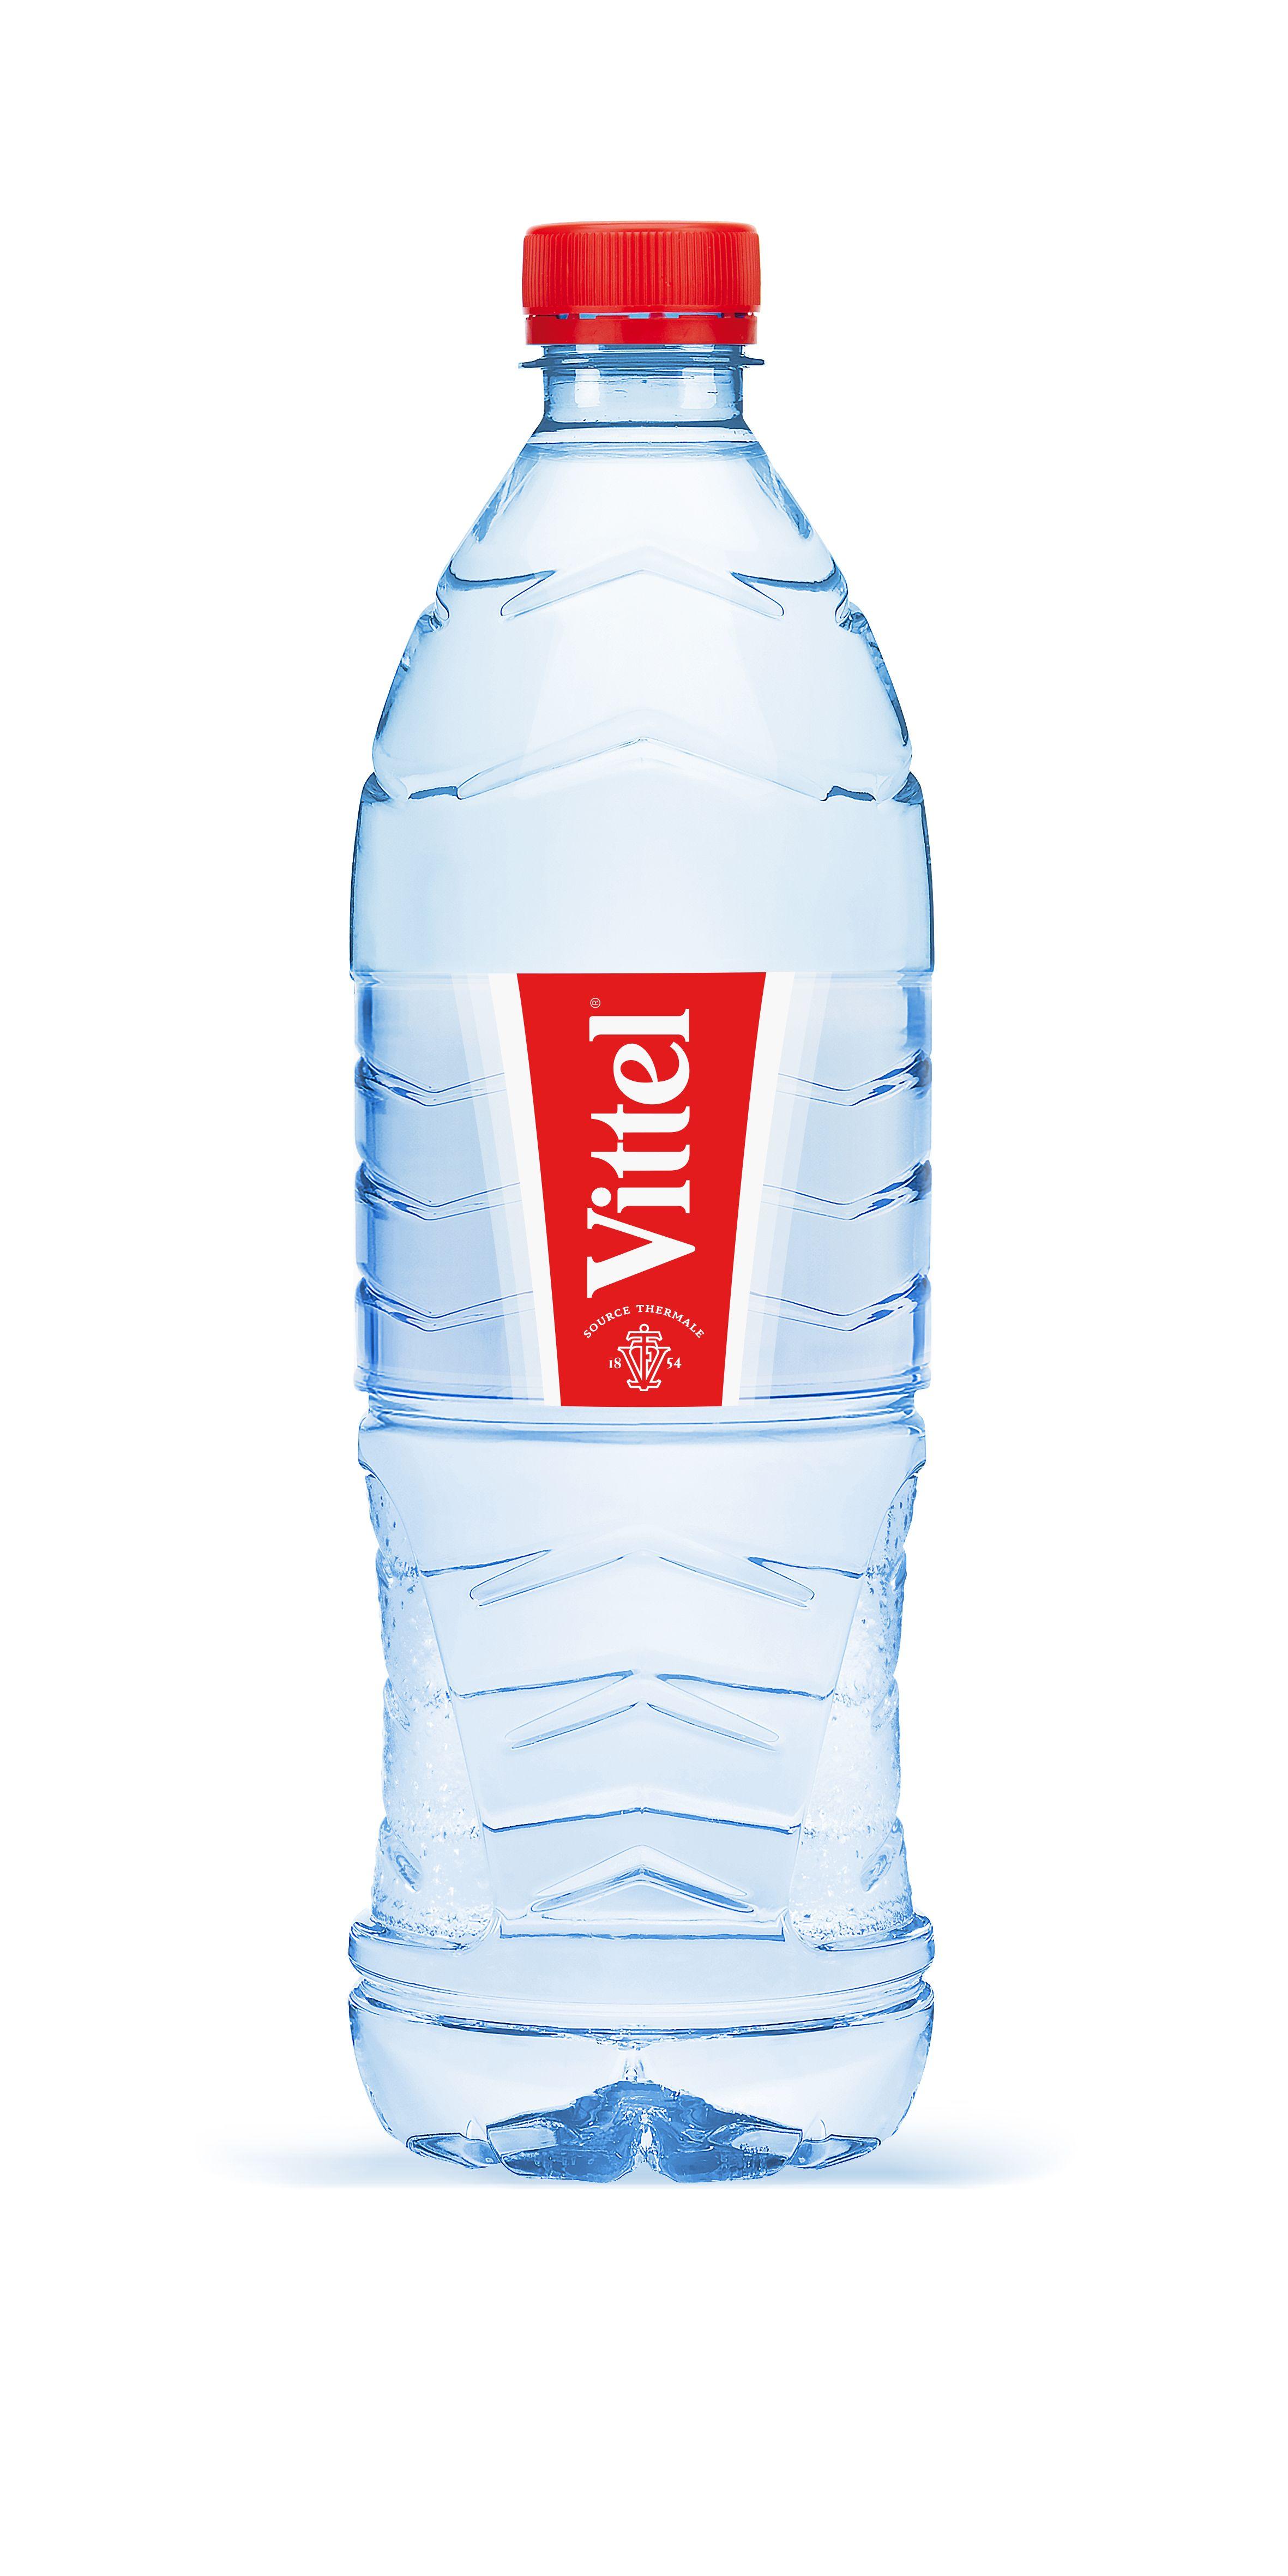 French Bottled Water Logo - Vittel